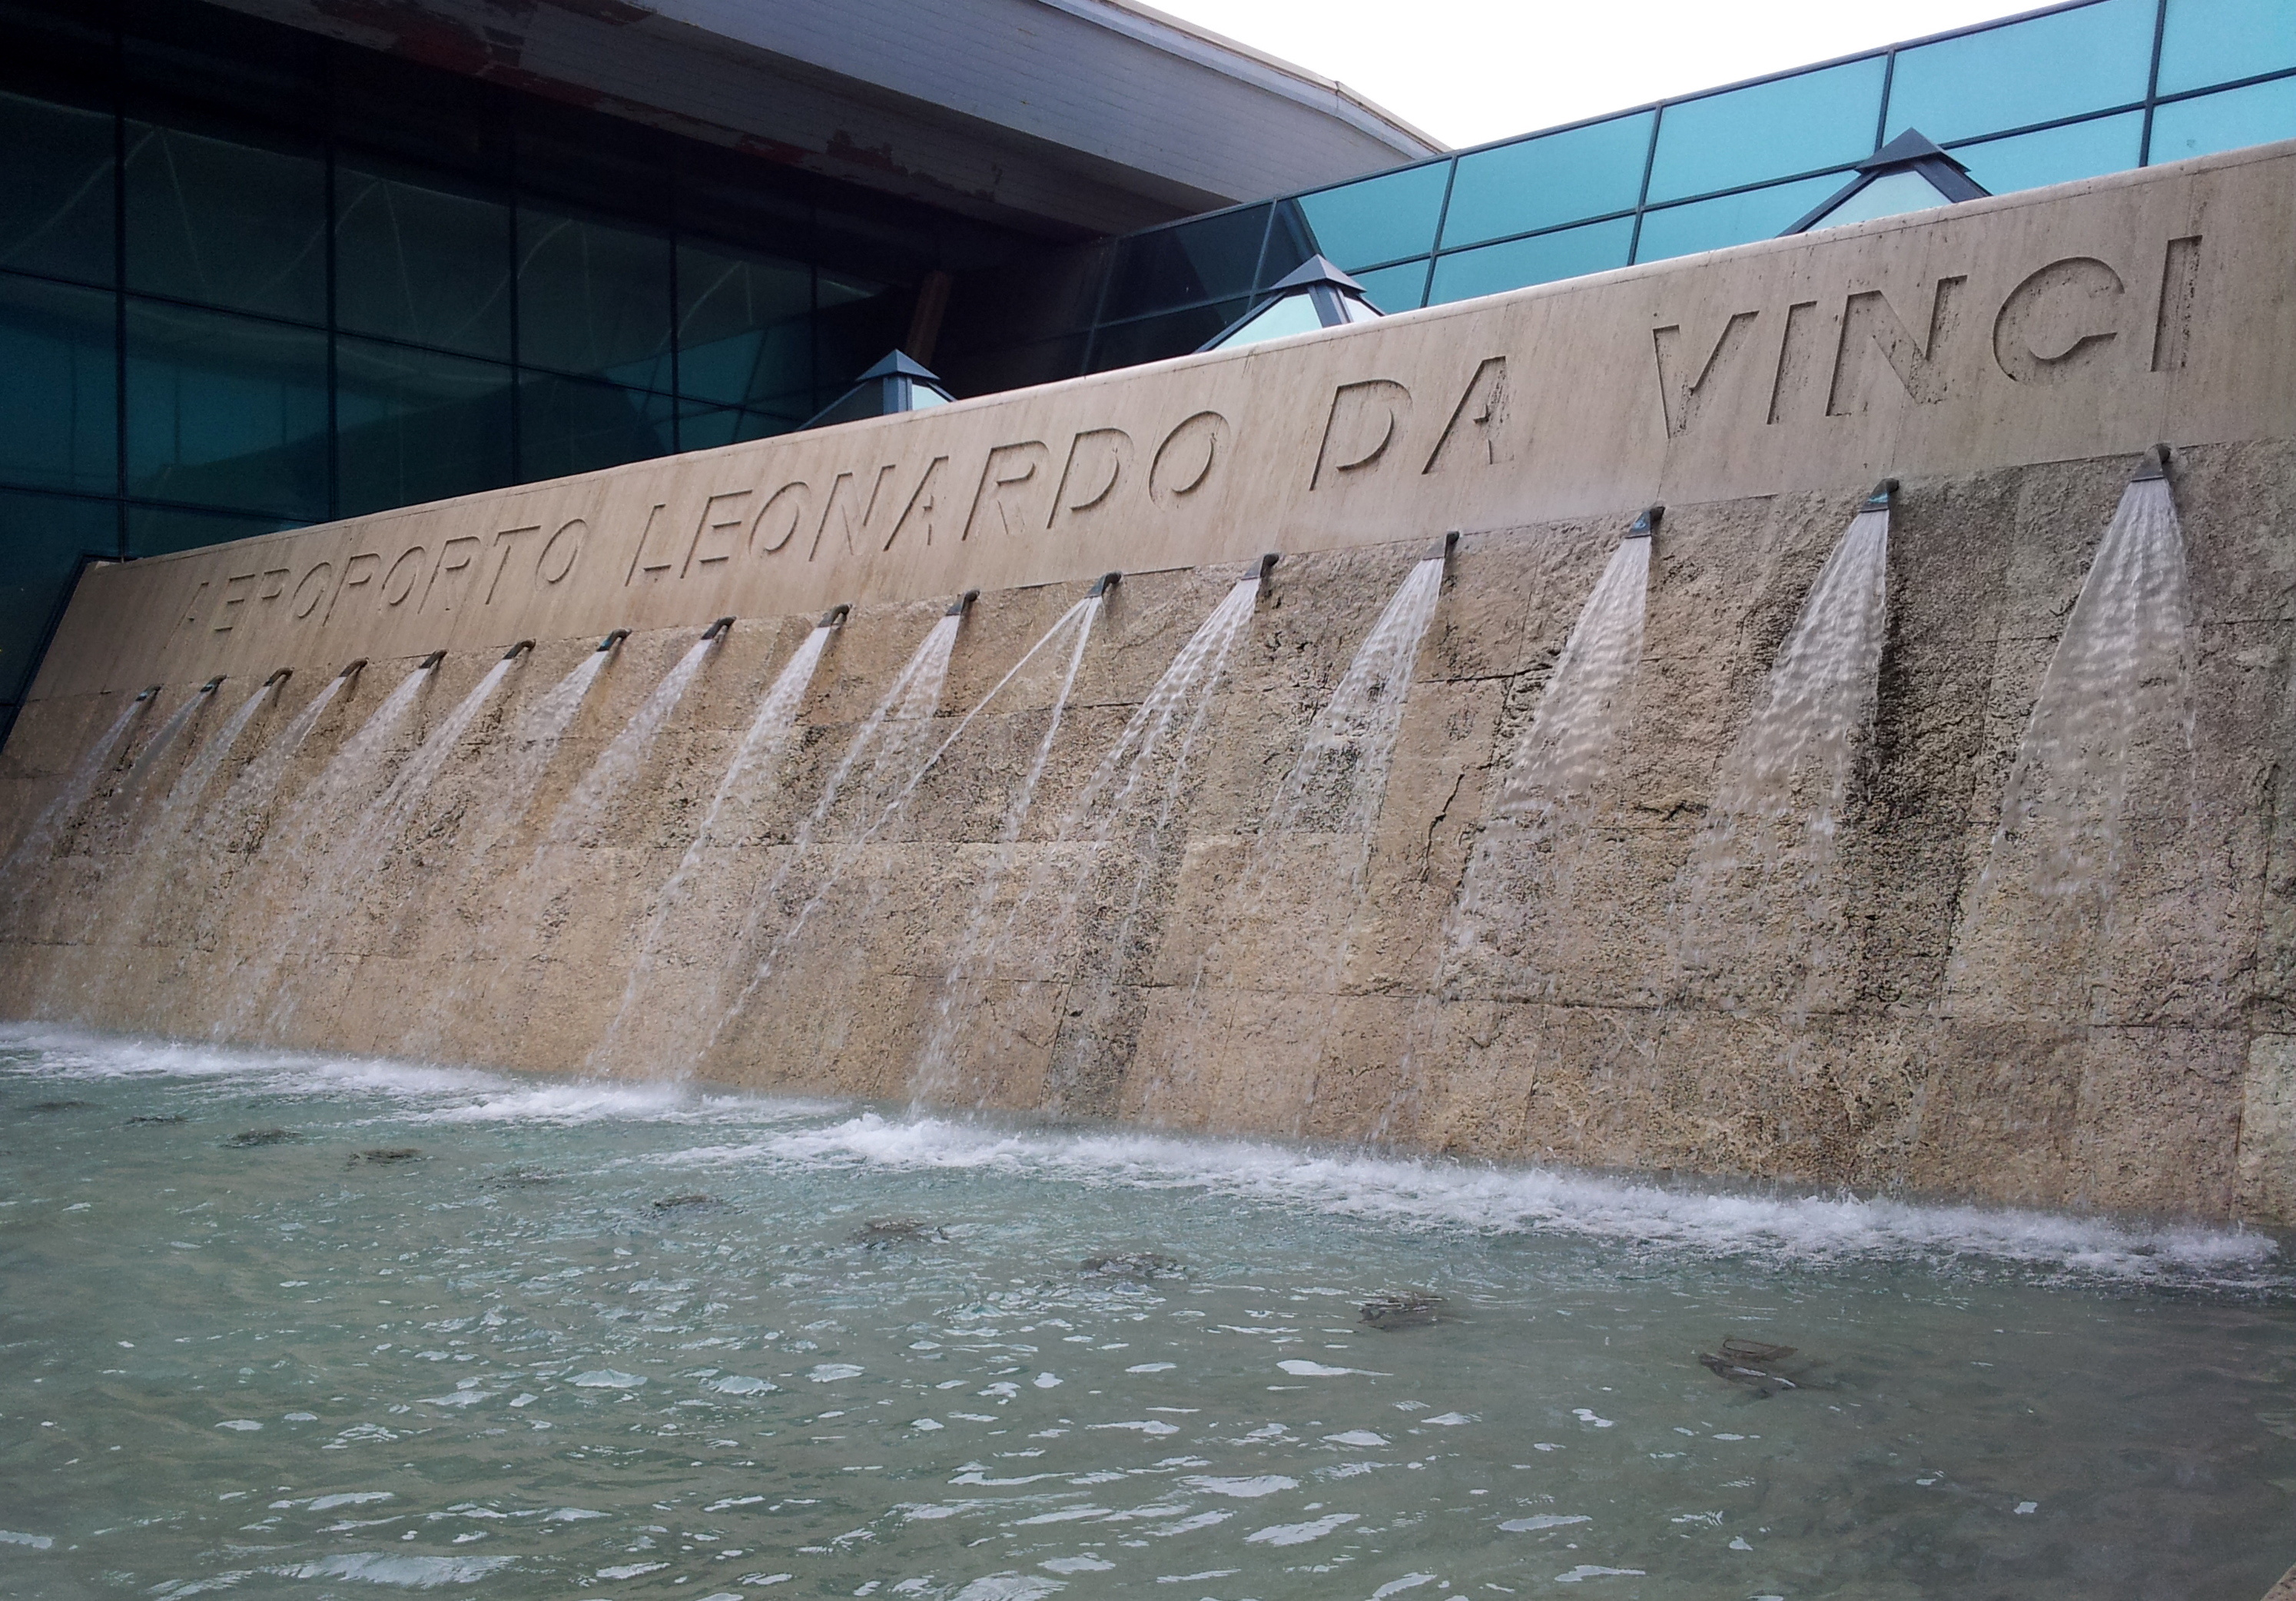 Leonardo da Vinci-Fiumicino Airport, Rome Fiumicino, Zurich fountains, travel photography, 2990x2090 HD Desktop